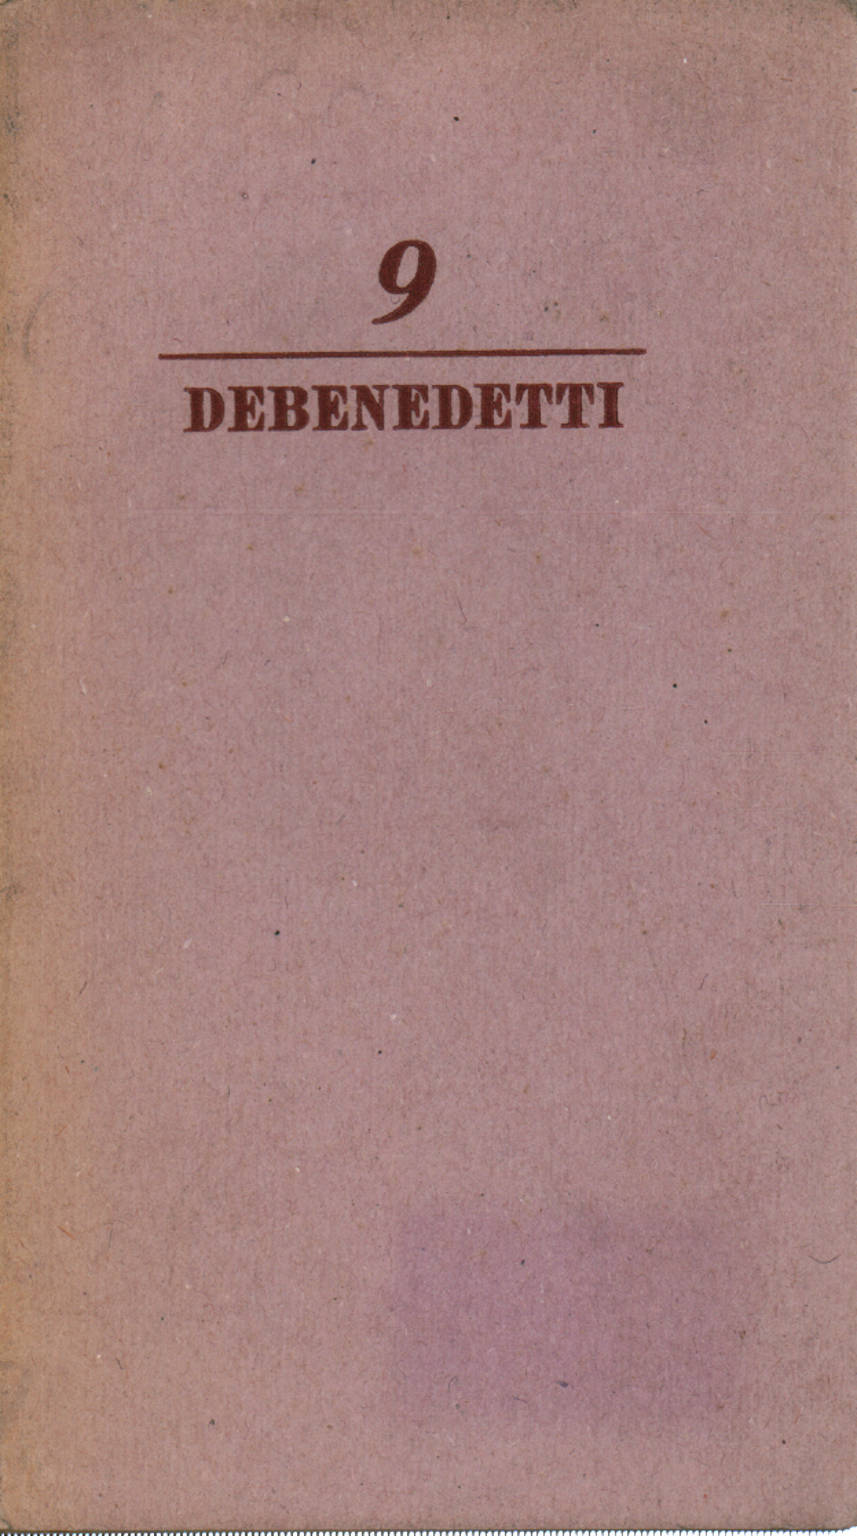 16 October 1943, Giacomo Debenedetti